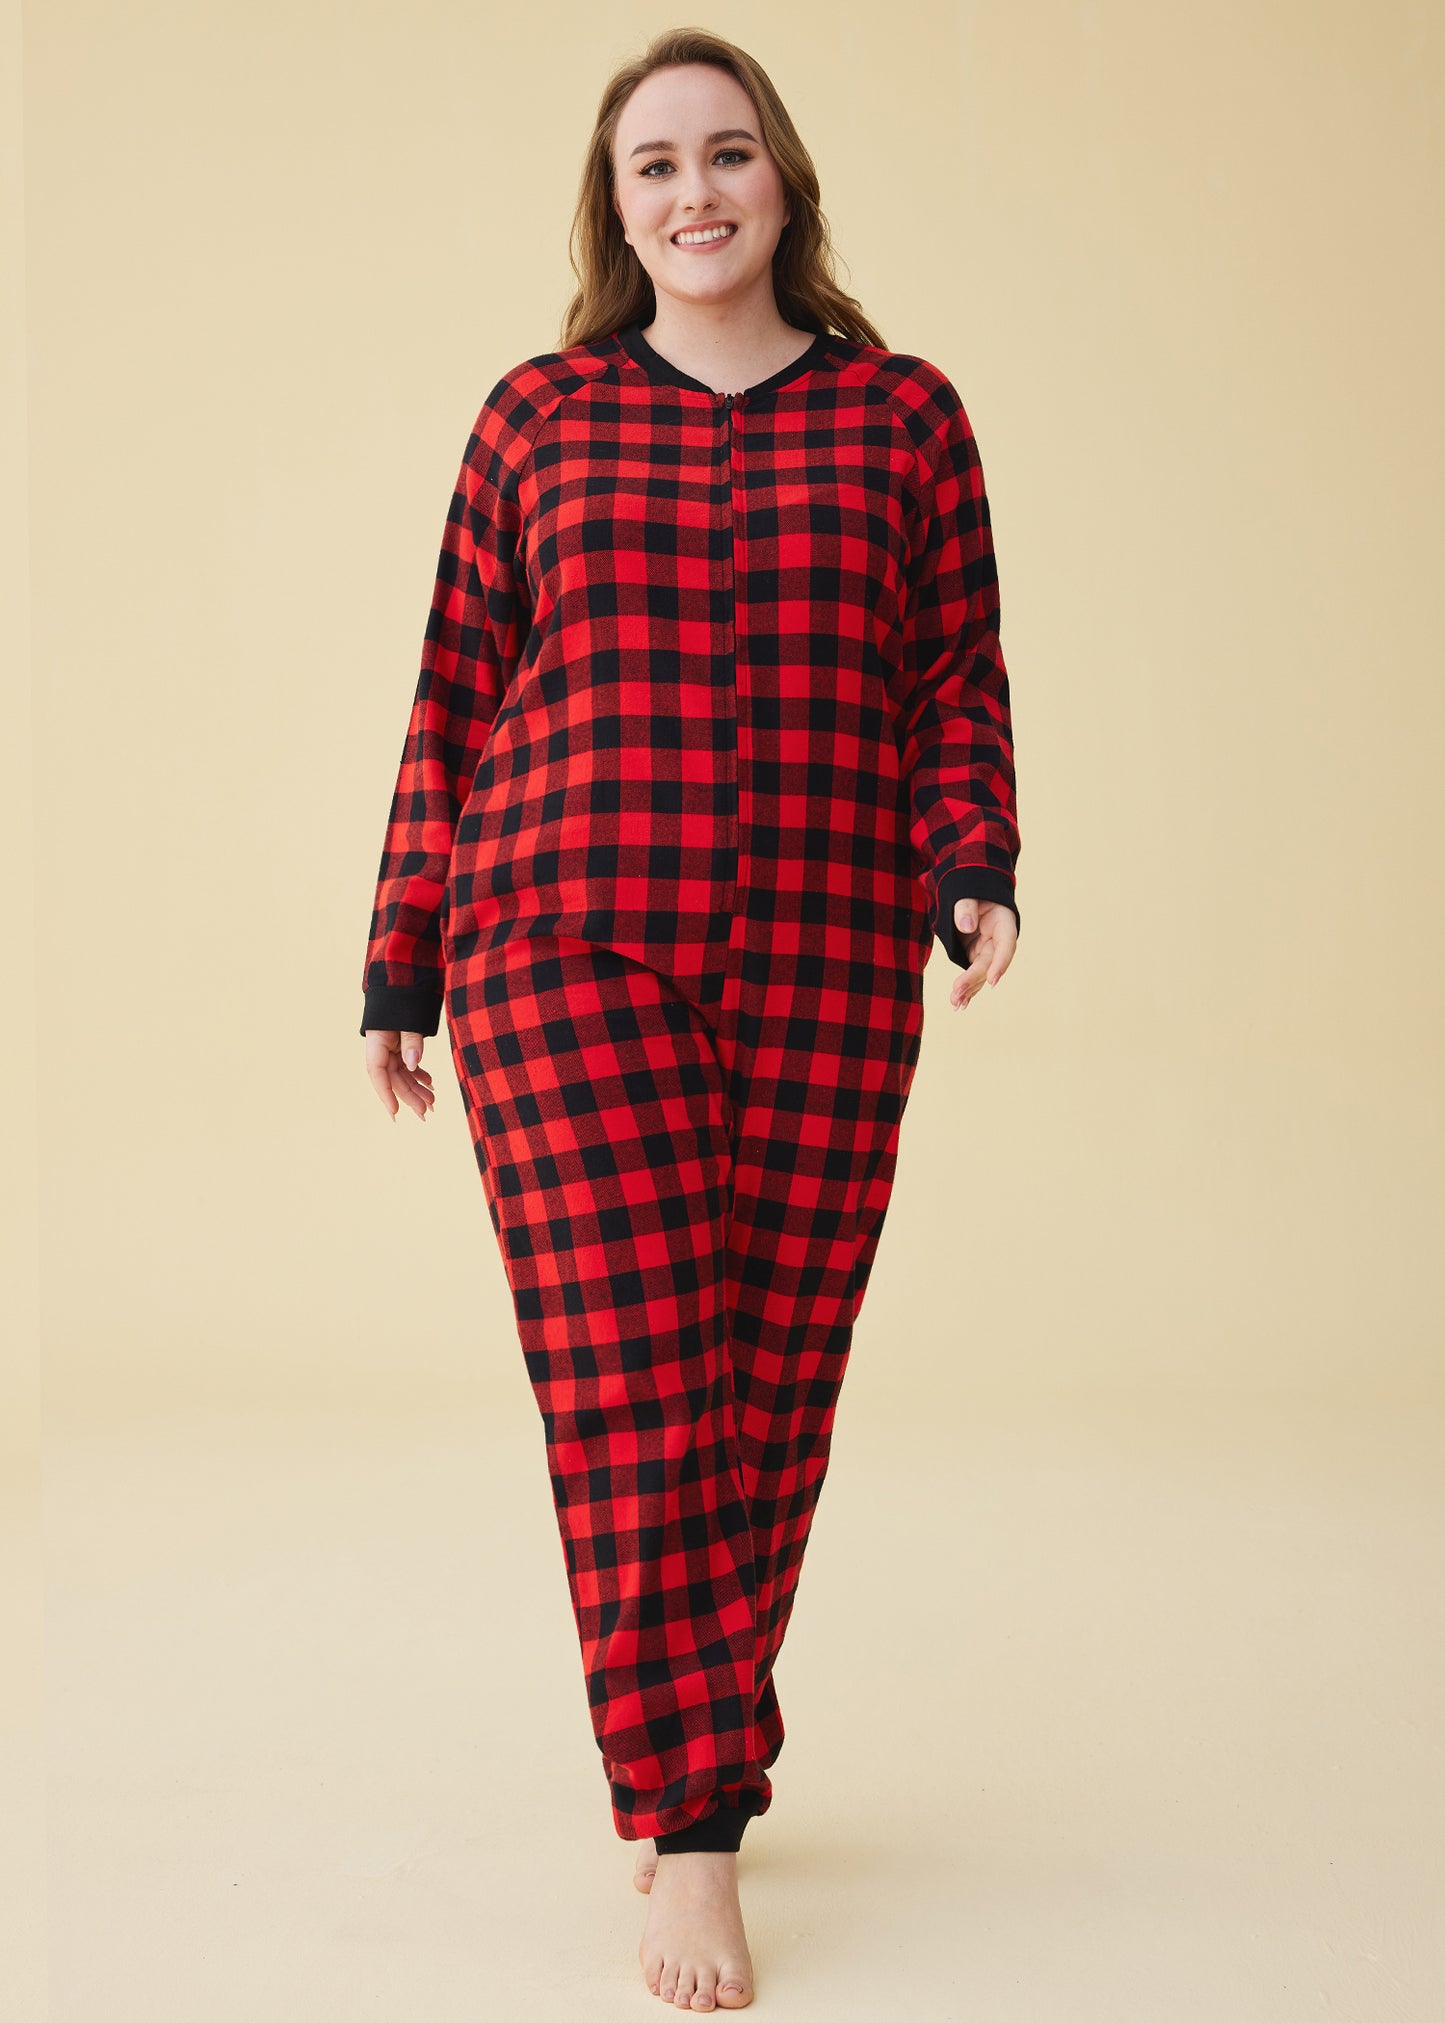 Women's Flannel Zipper Onesie Long Sleeves Pajama Jumpsuit